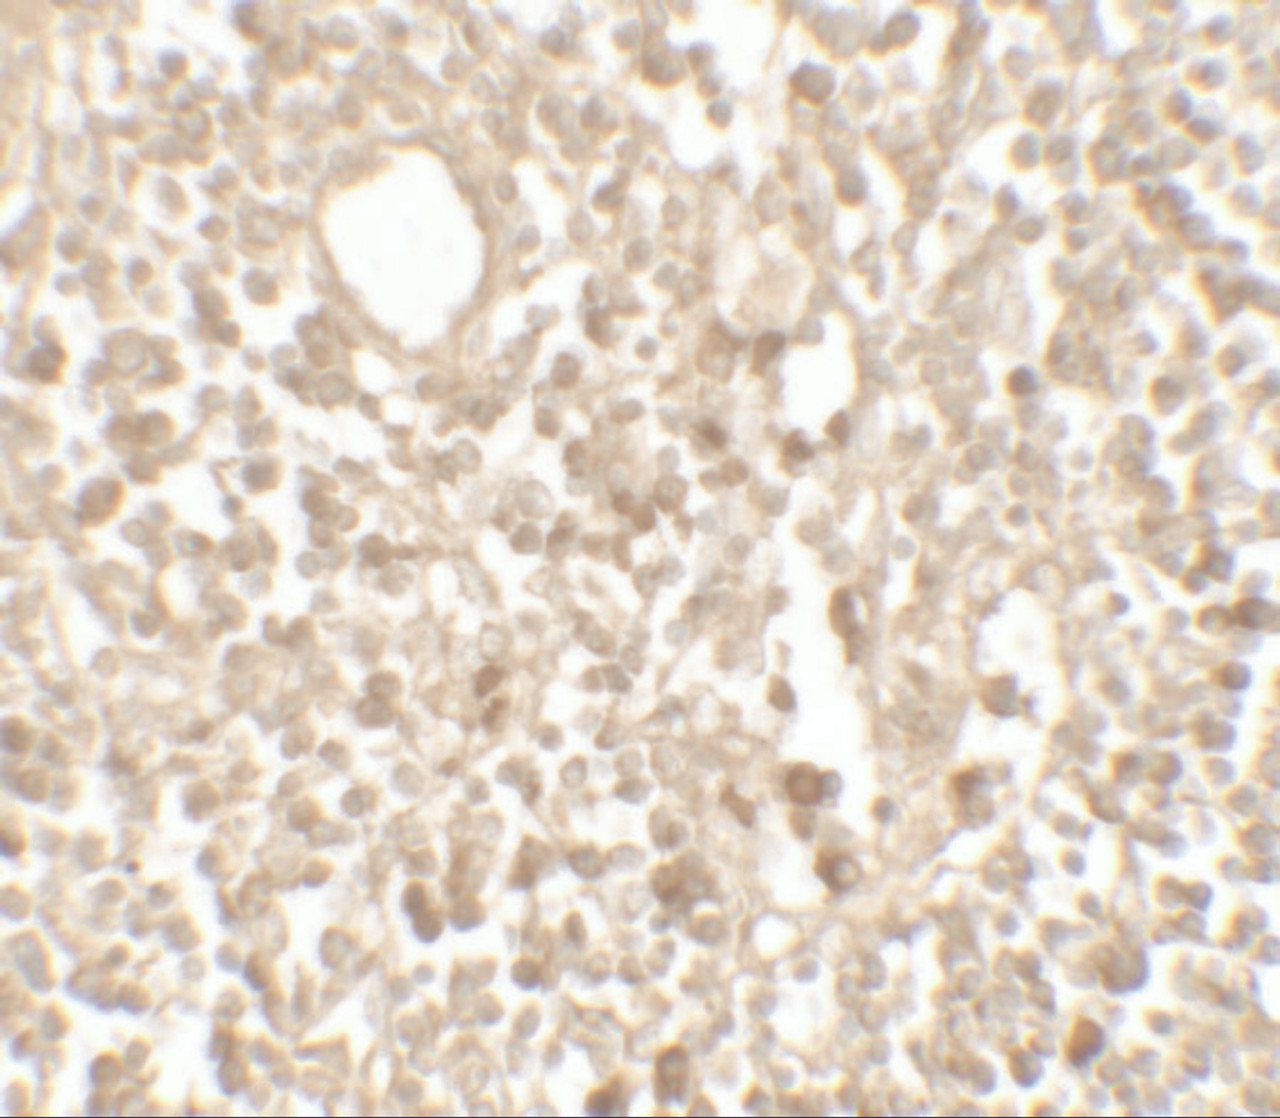 Immunohistochemistry of TMEM107 in human lymph node tissue with TMEM107 antibody at 5 ug/mL.